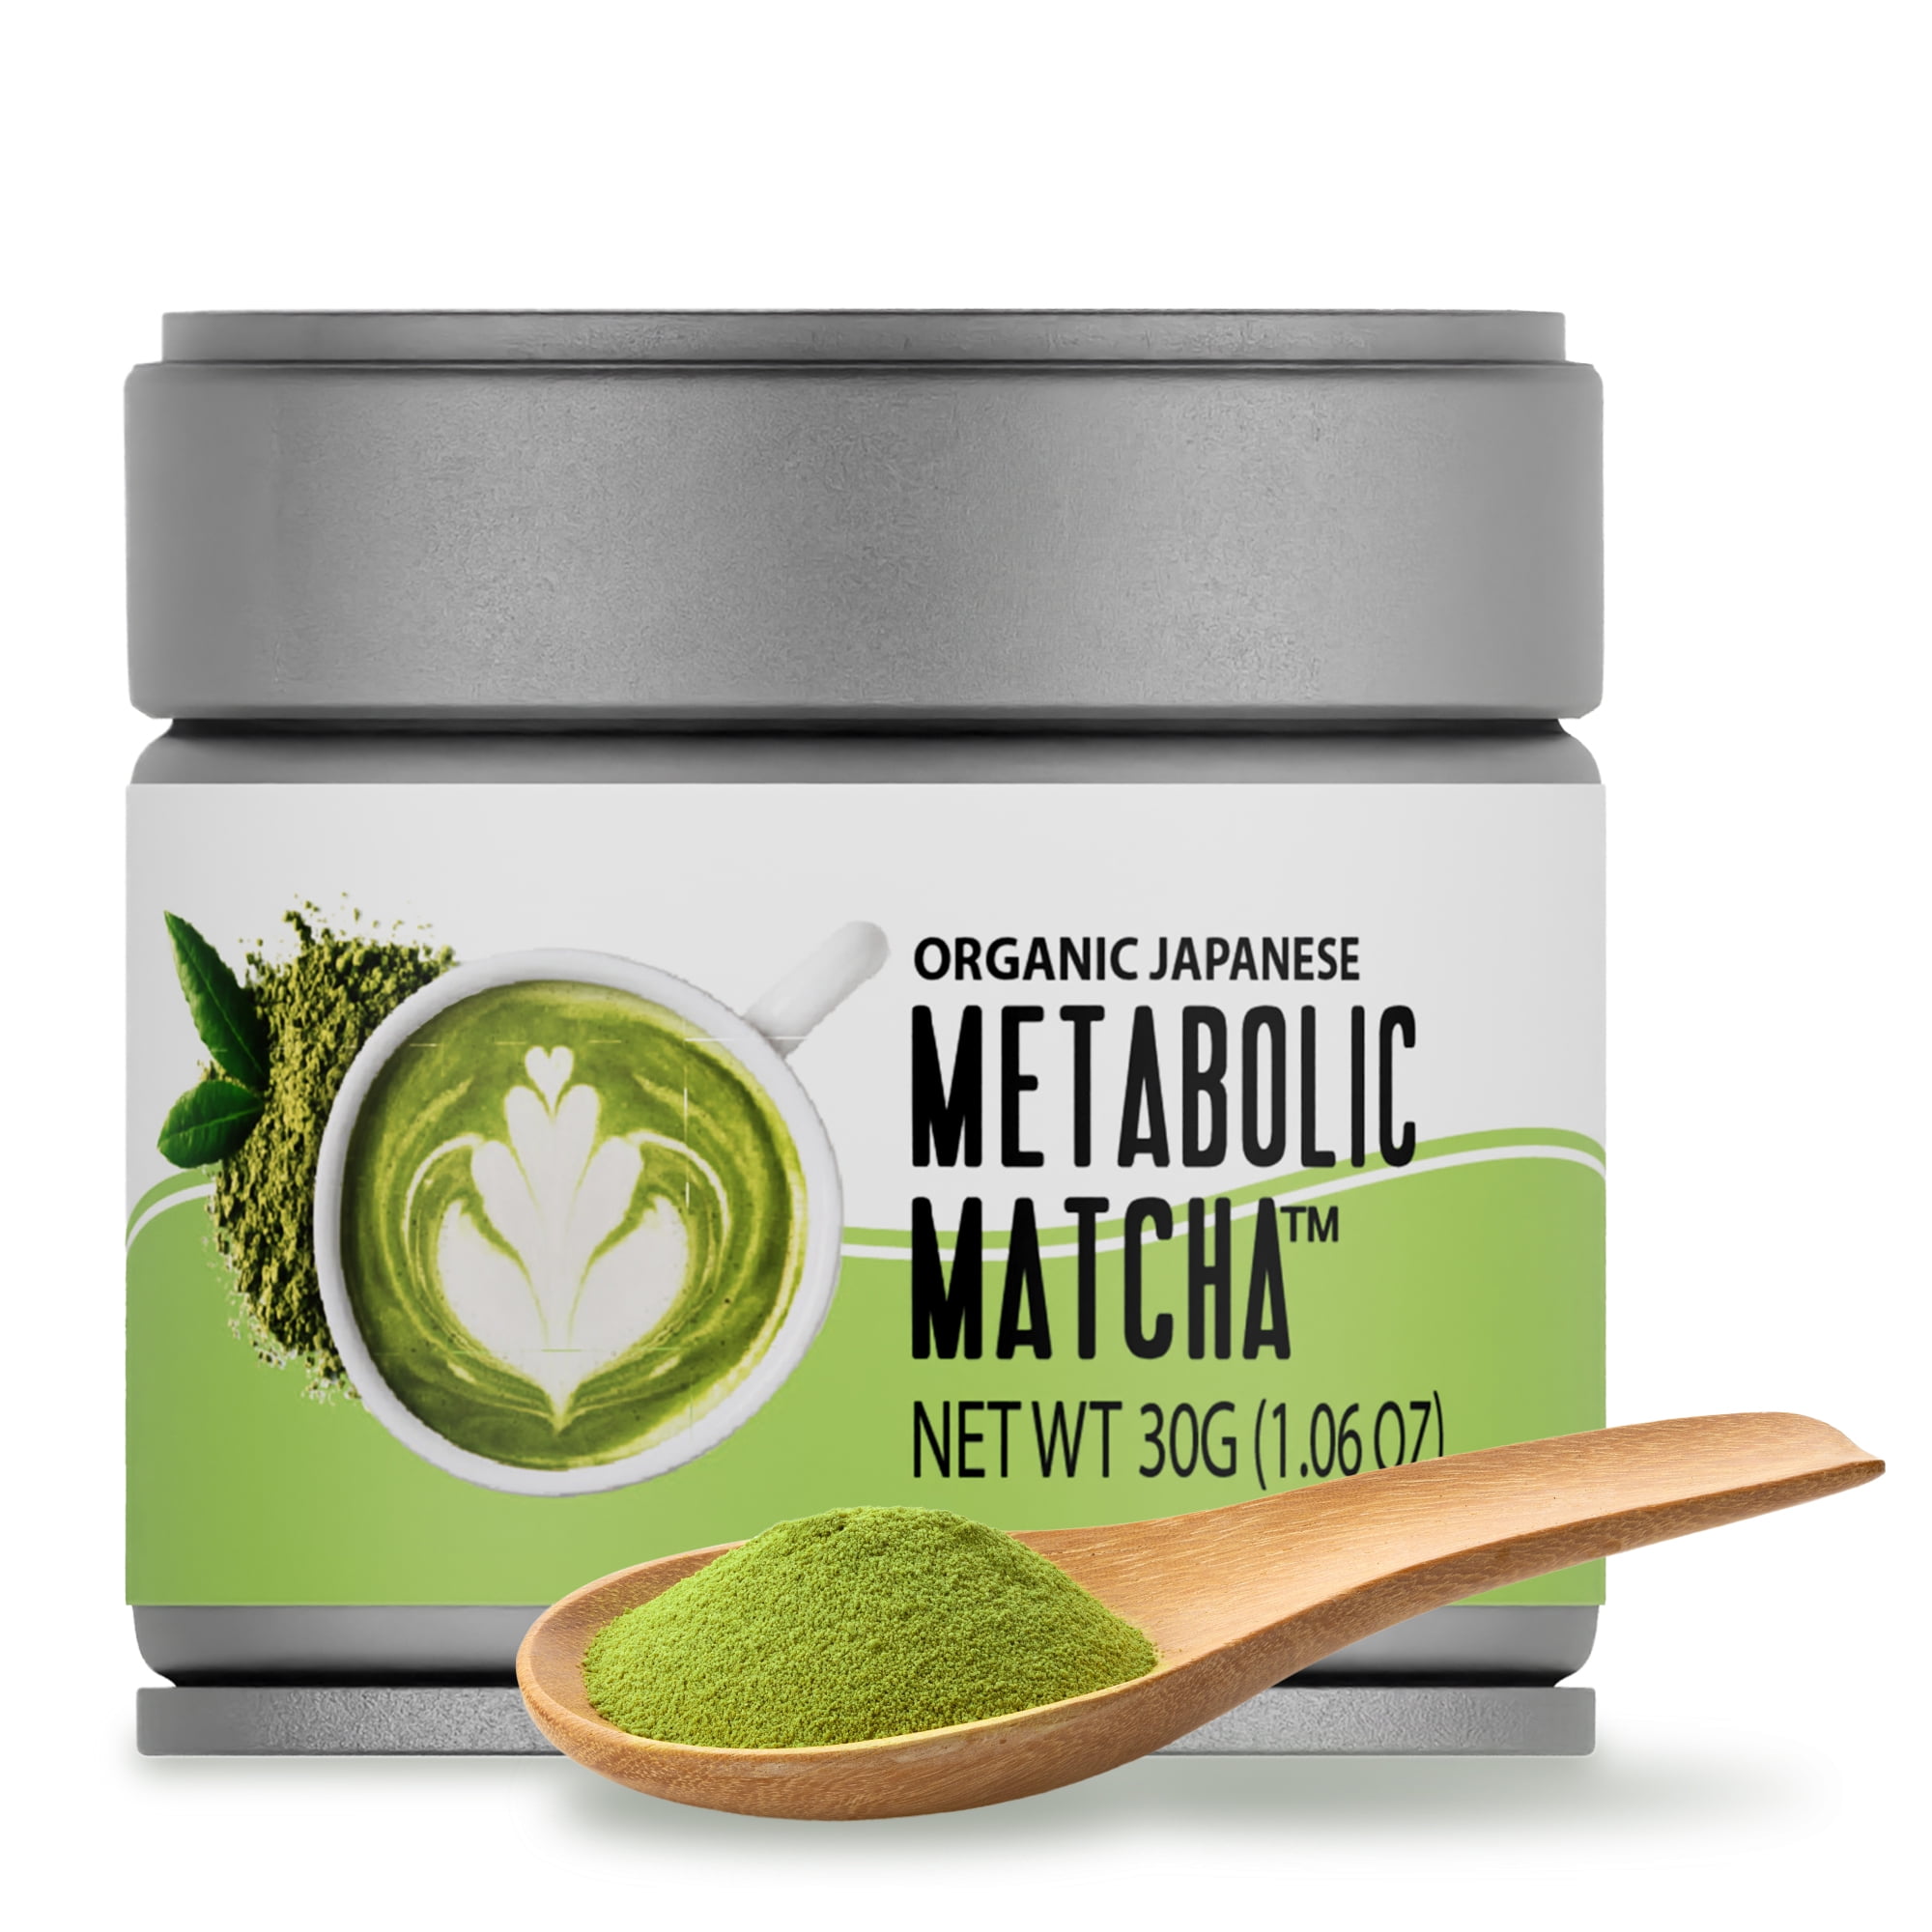 Organic MATCHA Japanese Tea - Slim and Glow 100G, Vegan – Zalina Swiss  Organic